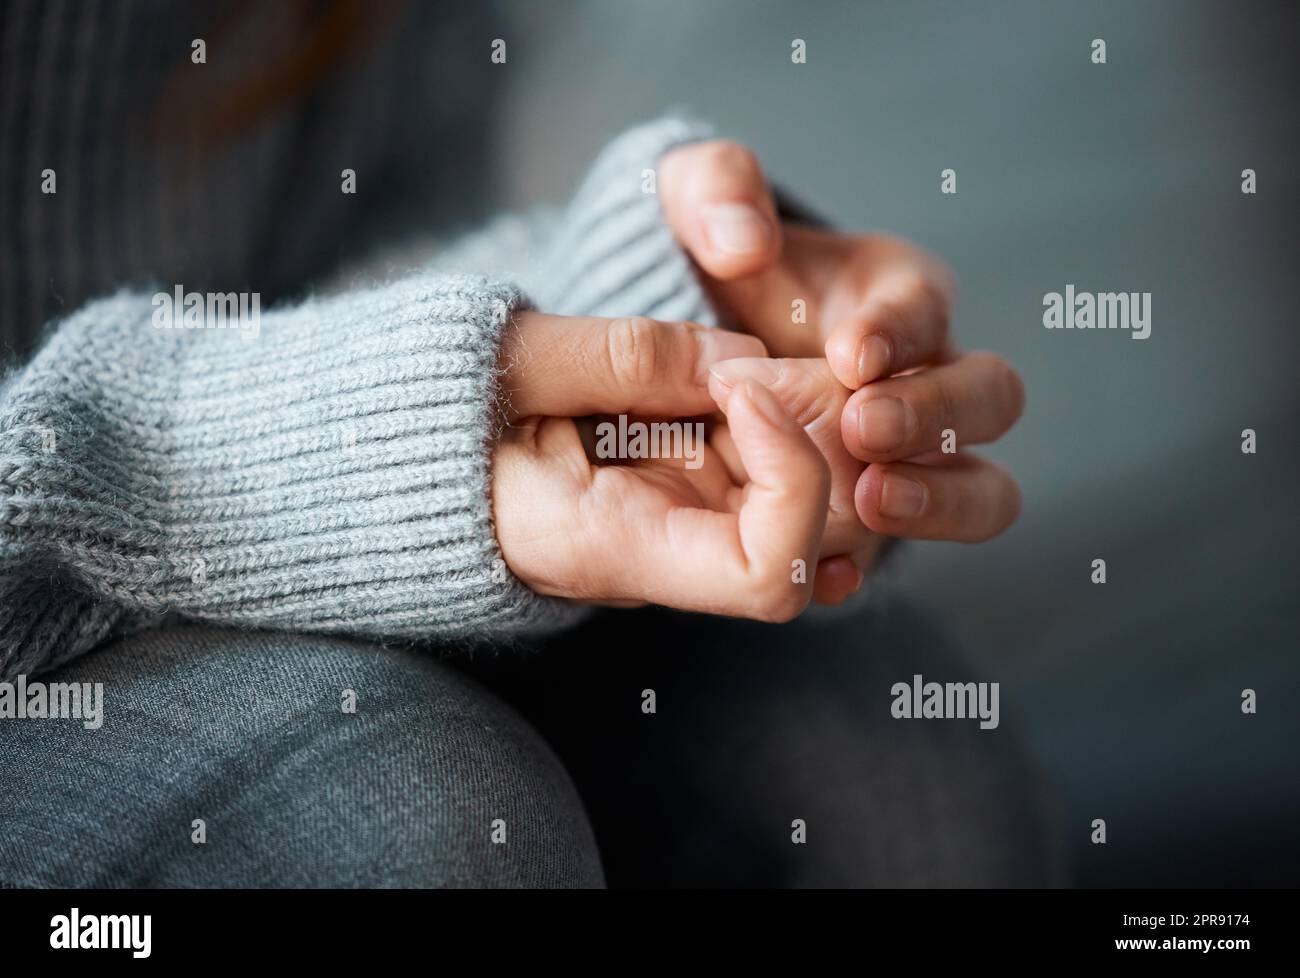 Eine Frau, die ihre Hände nervös zusammenhält, kann sich nervös entwickeln. Stockfoto